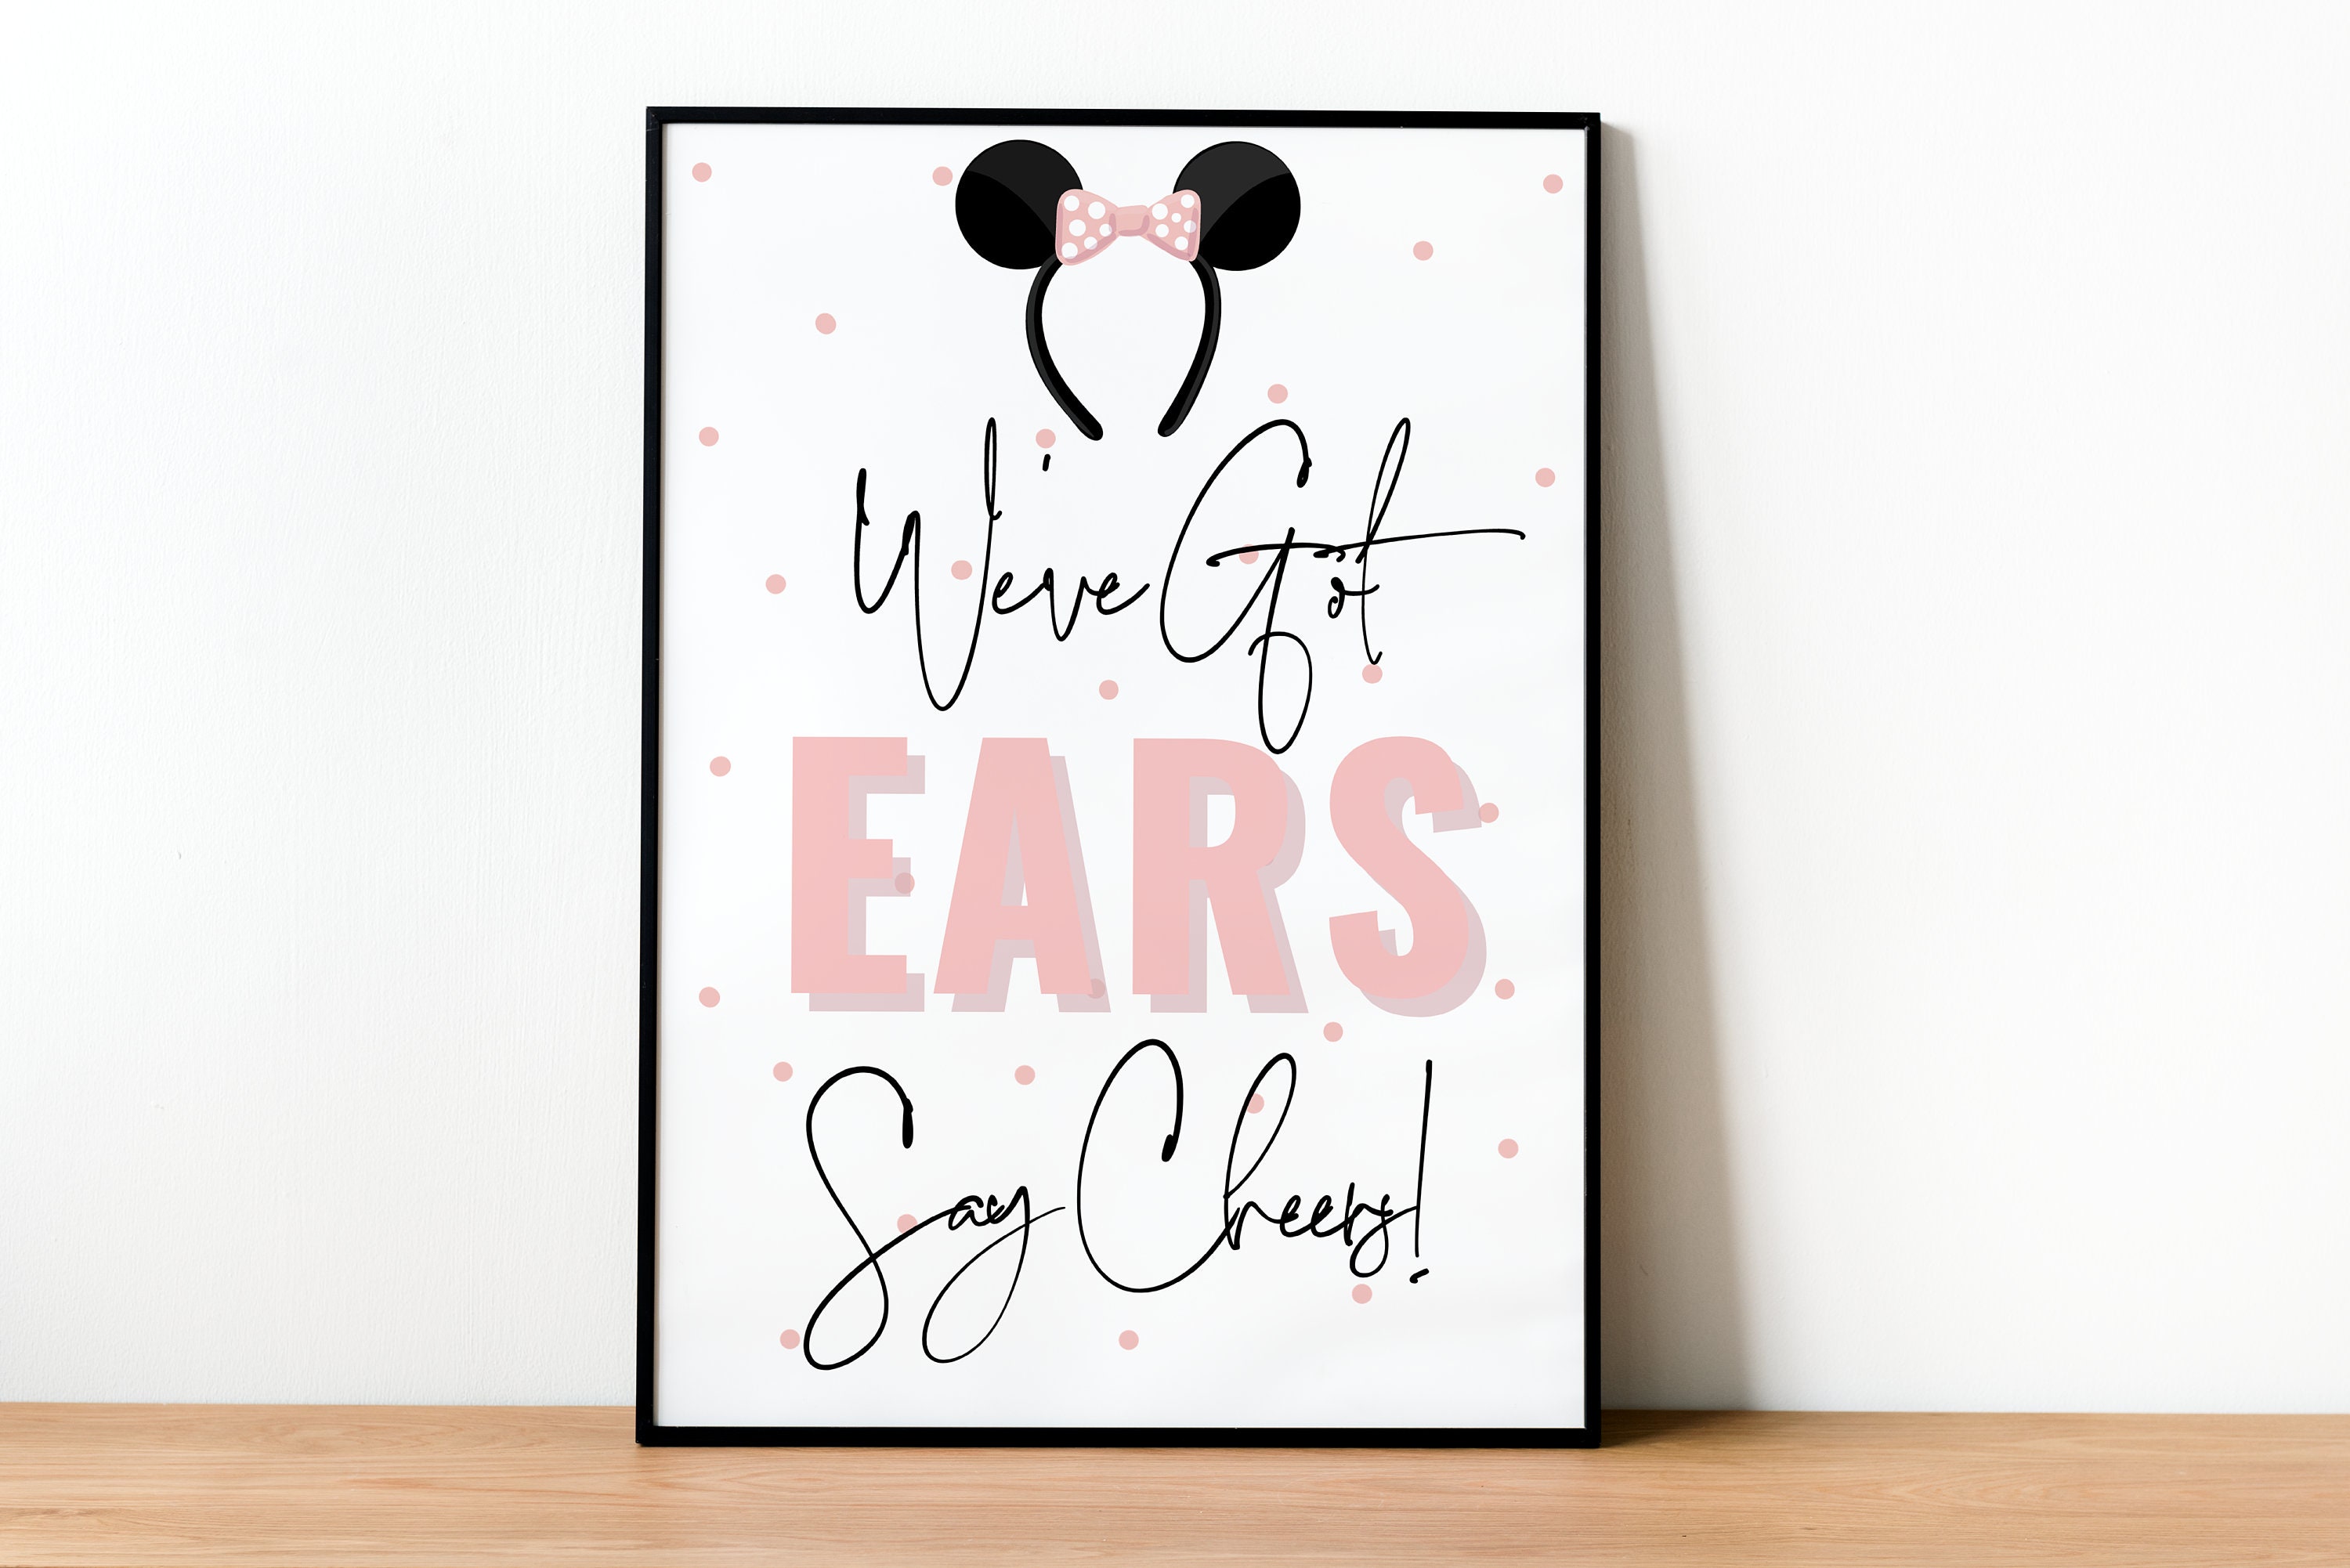 Minnie Mouse affiches et impressions par Kyle Style - Printler